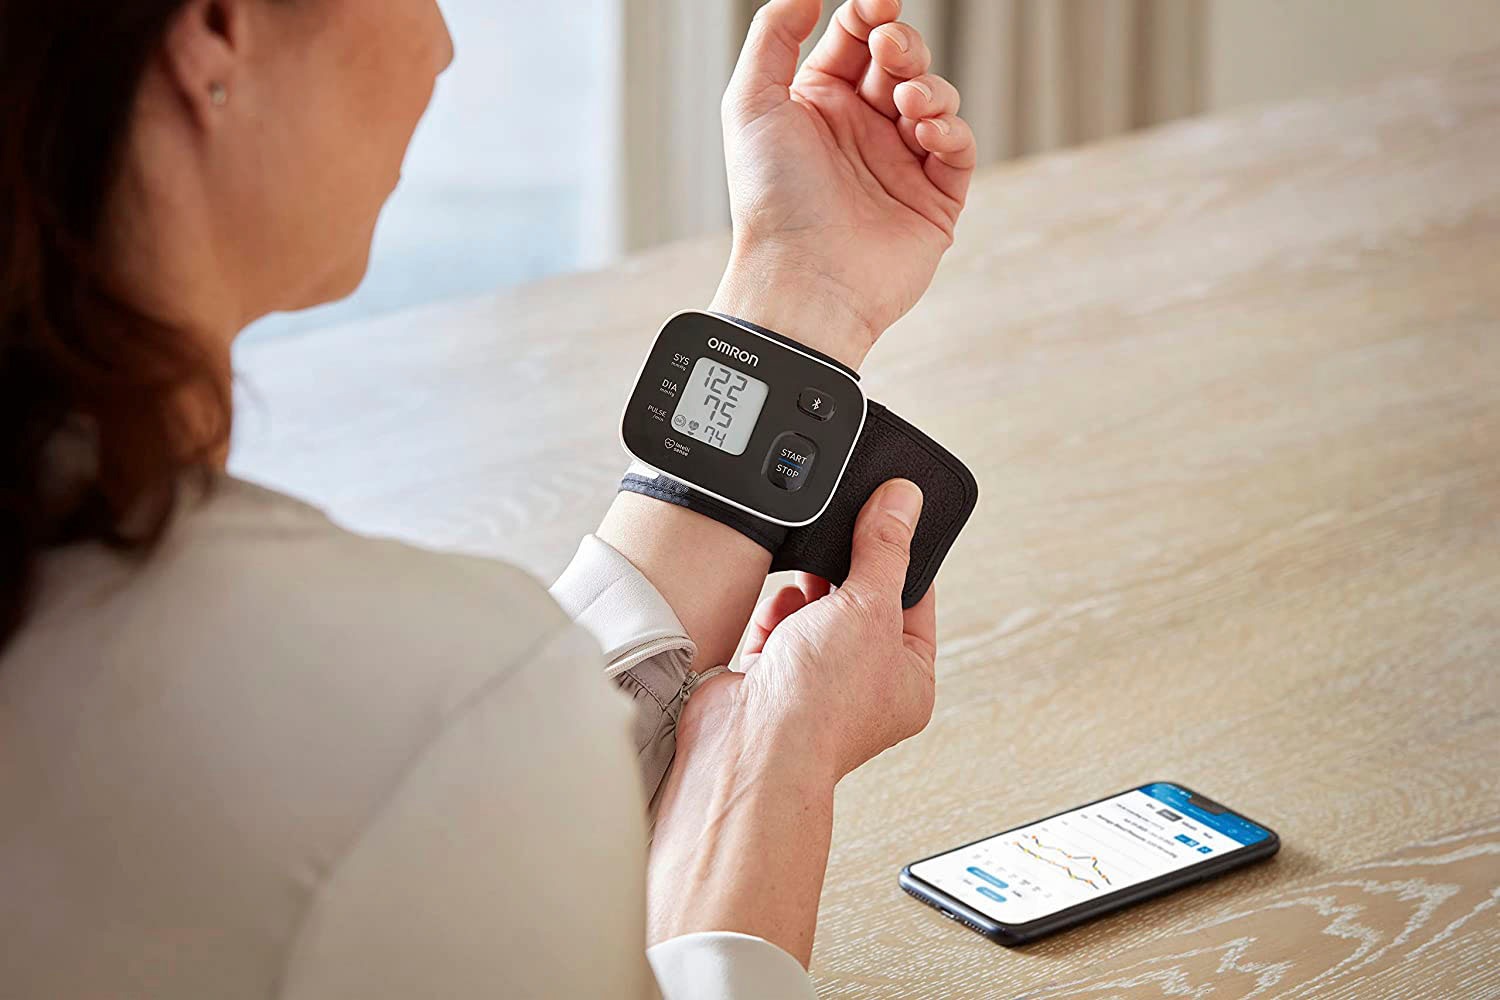 Omron Handgelenk-Blutdruckmessgerät »RS3 Intelli IT digitales Handgelenk-Blutdruckmessgerät«, klinisch validiert, mit kostenloser Smartphone App OMRON connect